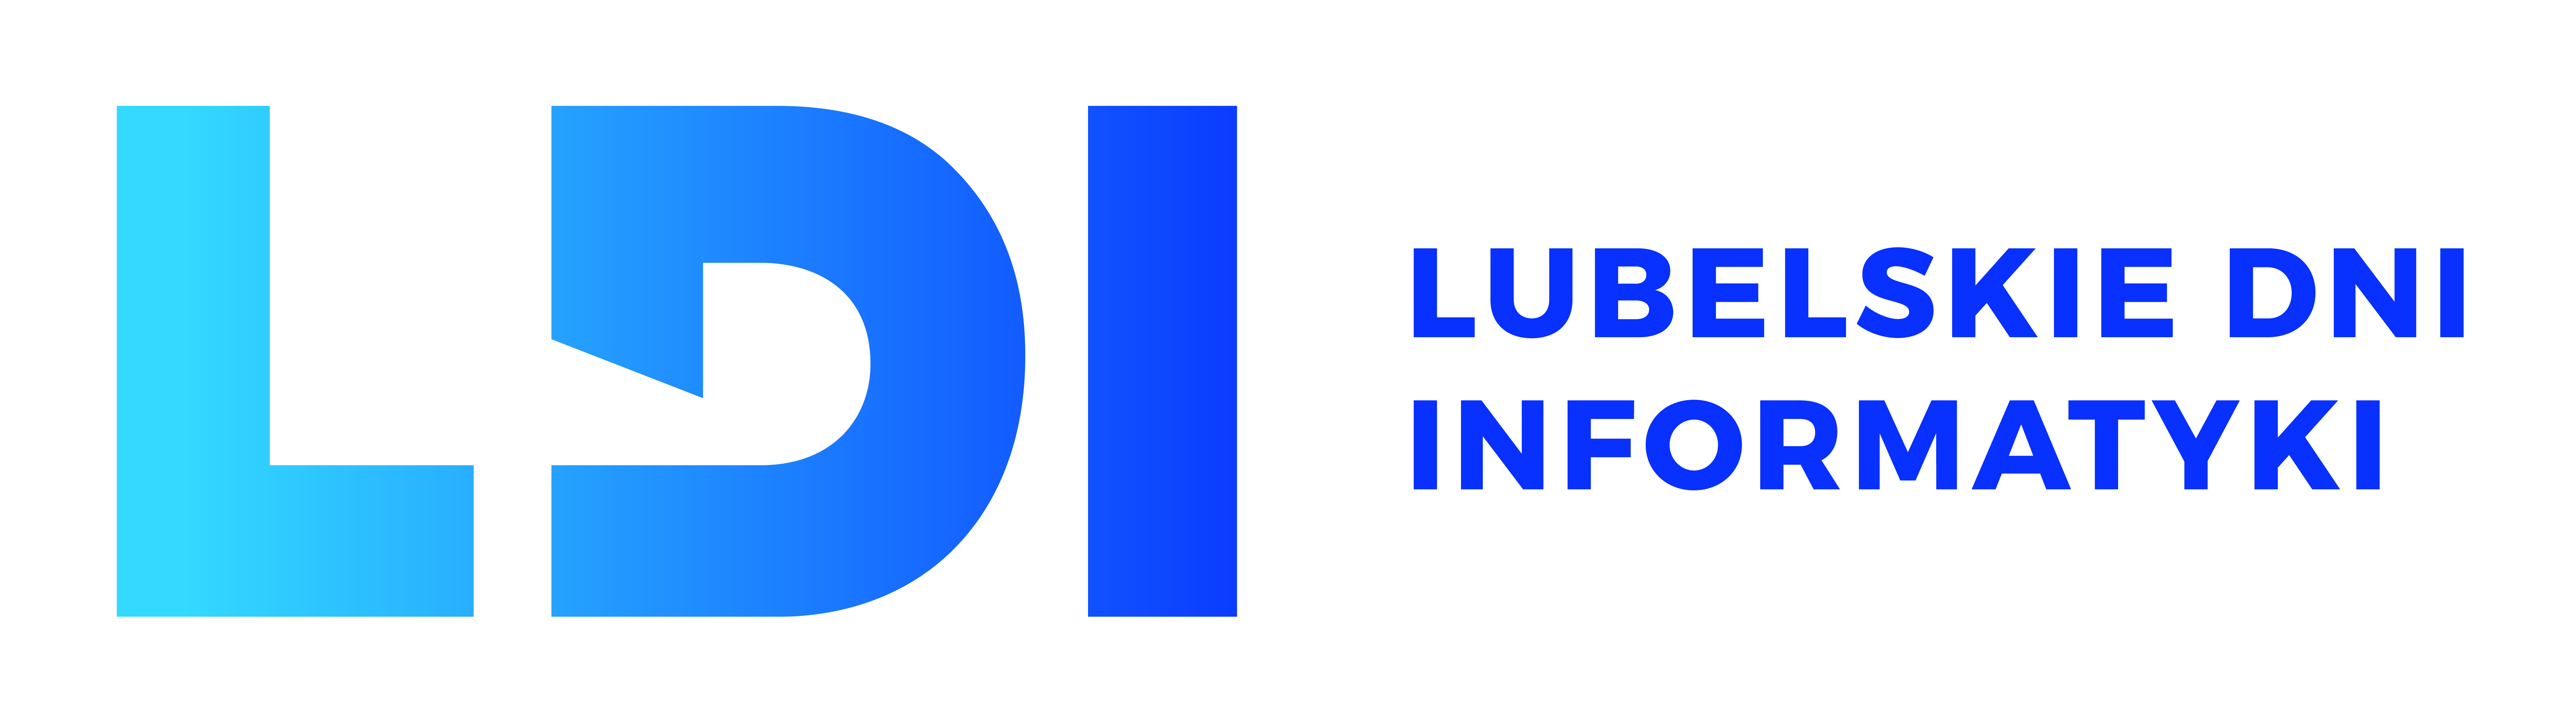 lubelskie-dni-informatyki-2020